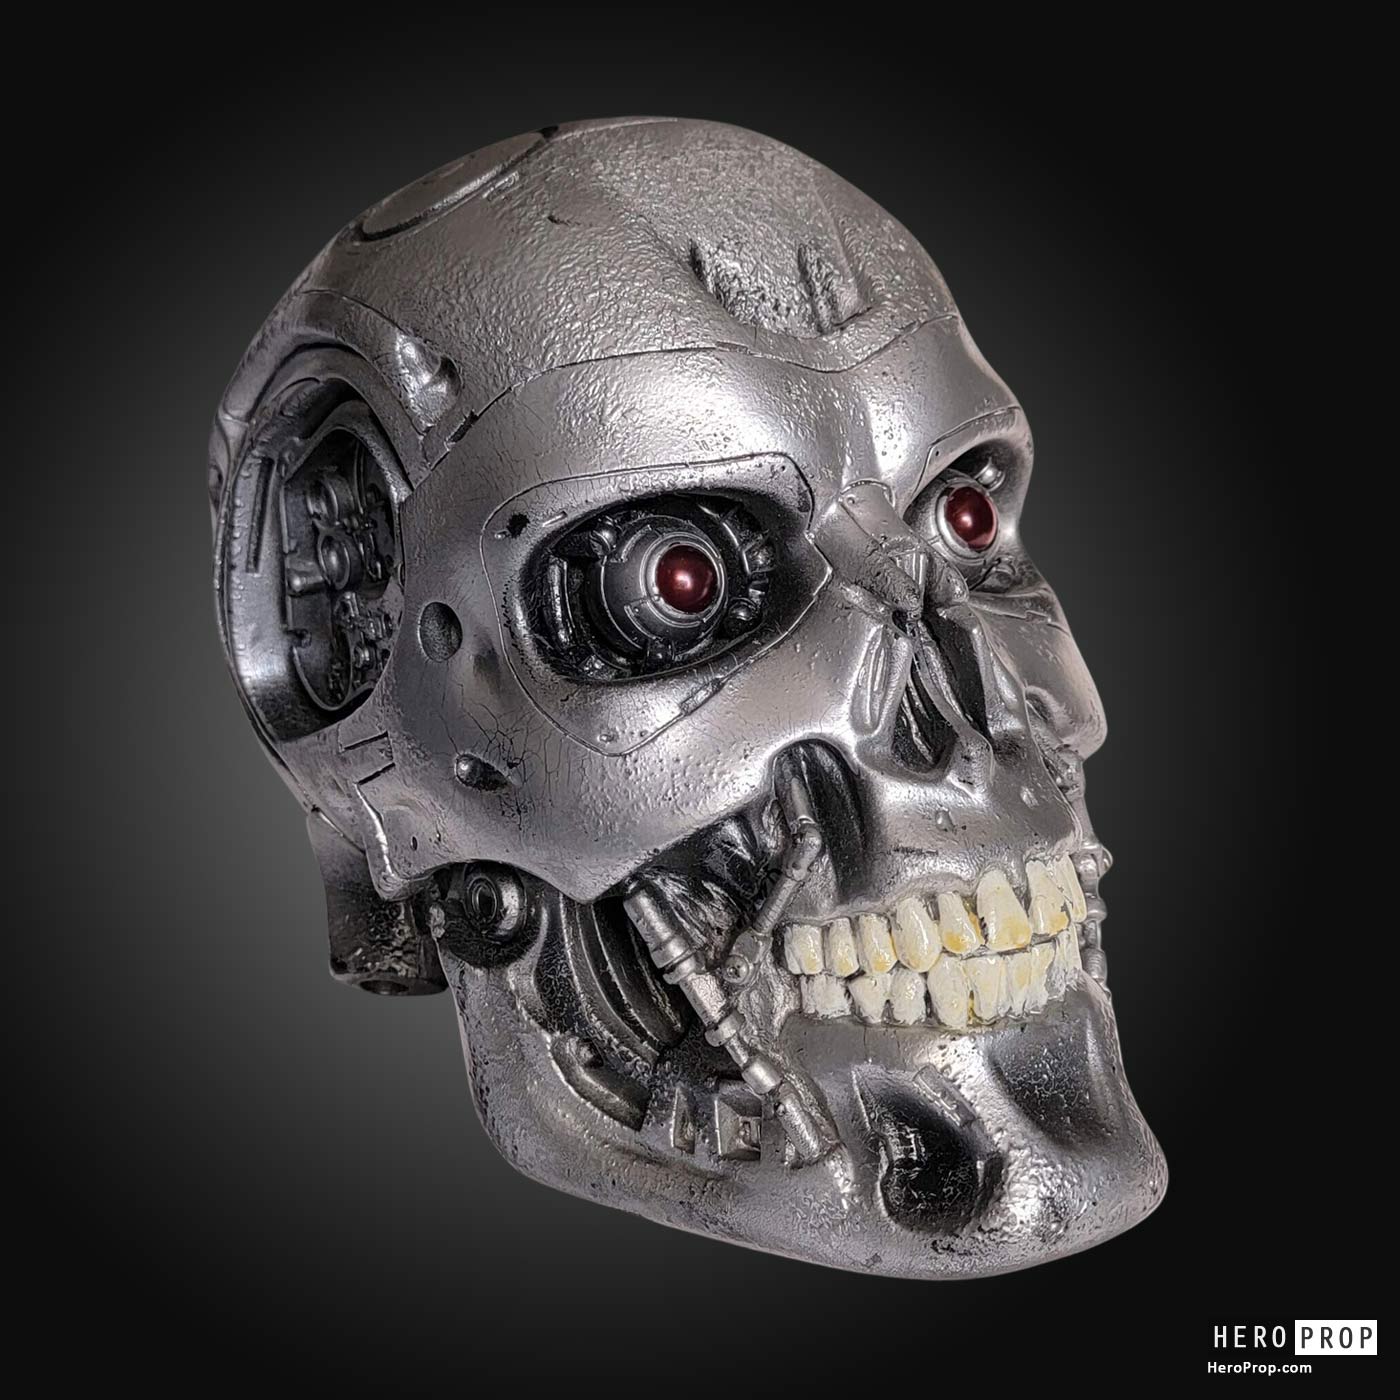 https://heroprop.com/wp-content/uploads/2023/10/Terminator-4-Salvation-Movie-Prop-Endoskeleton-Head.jpg